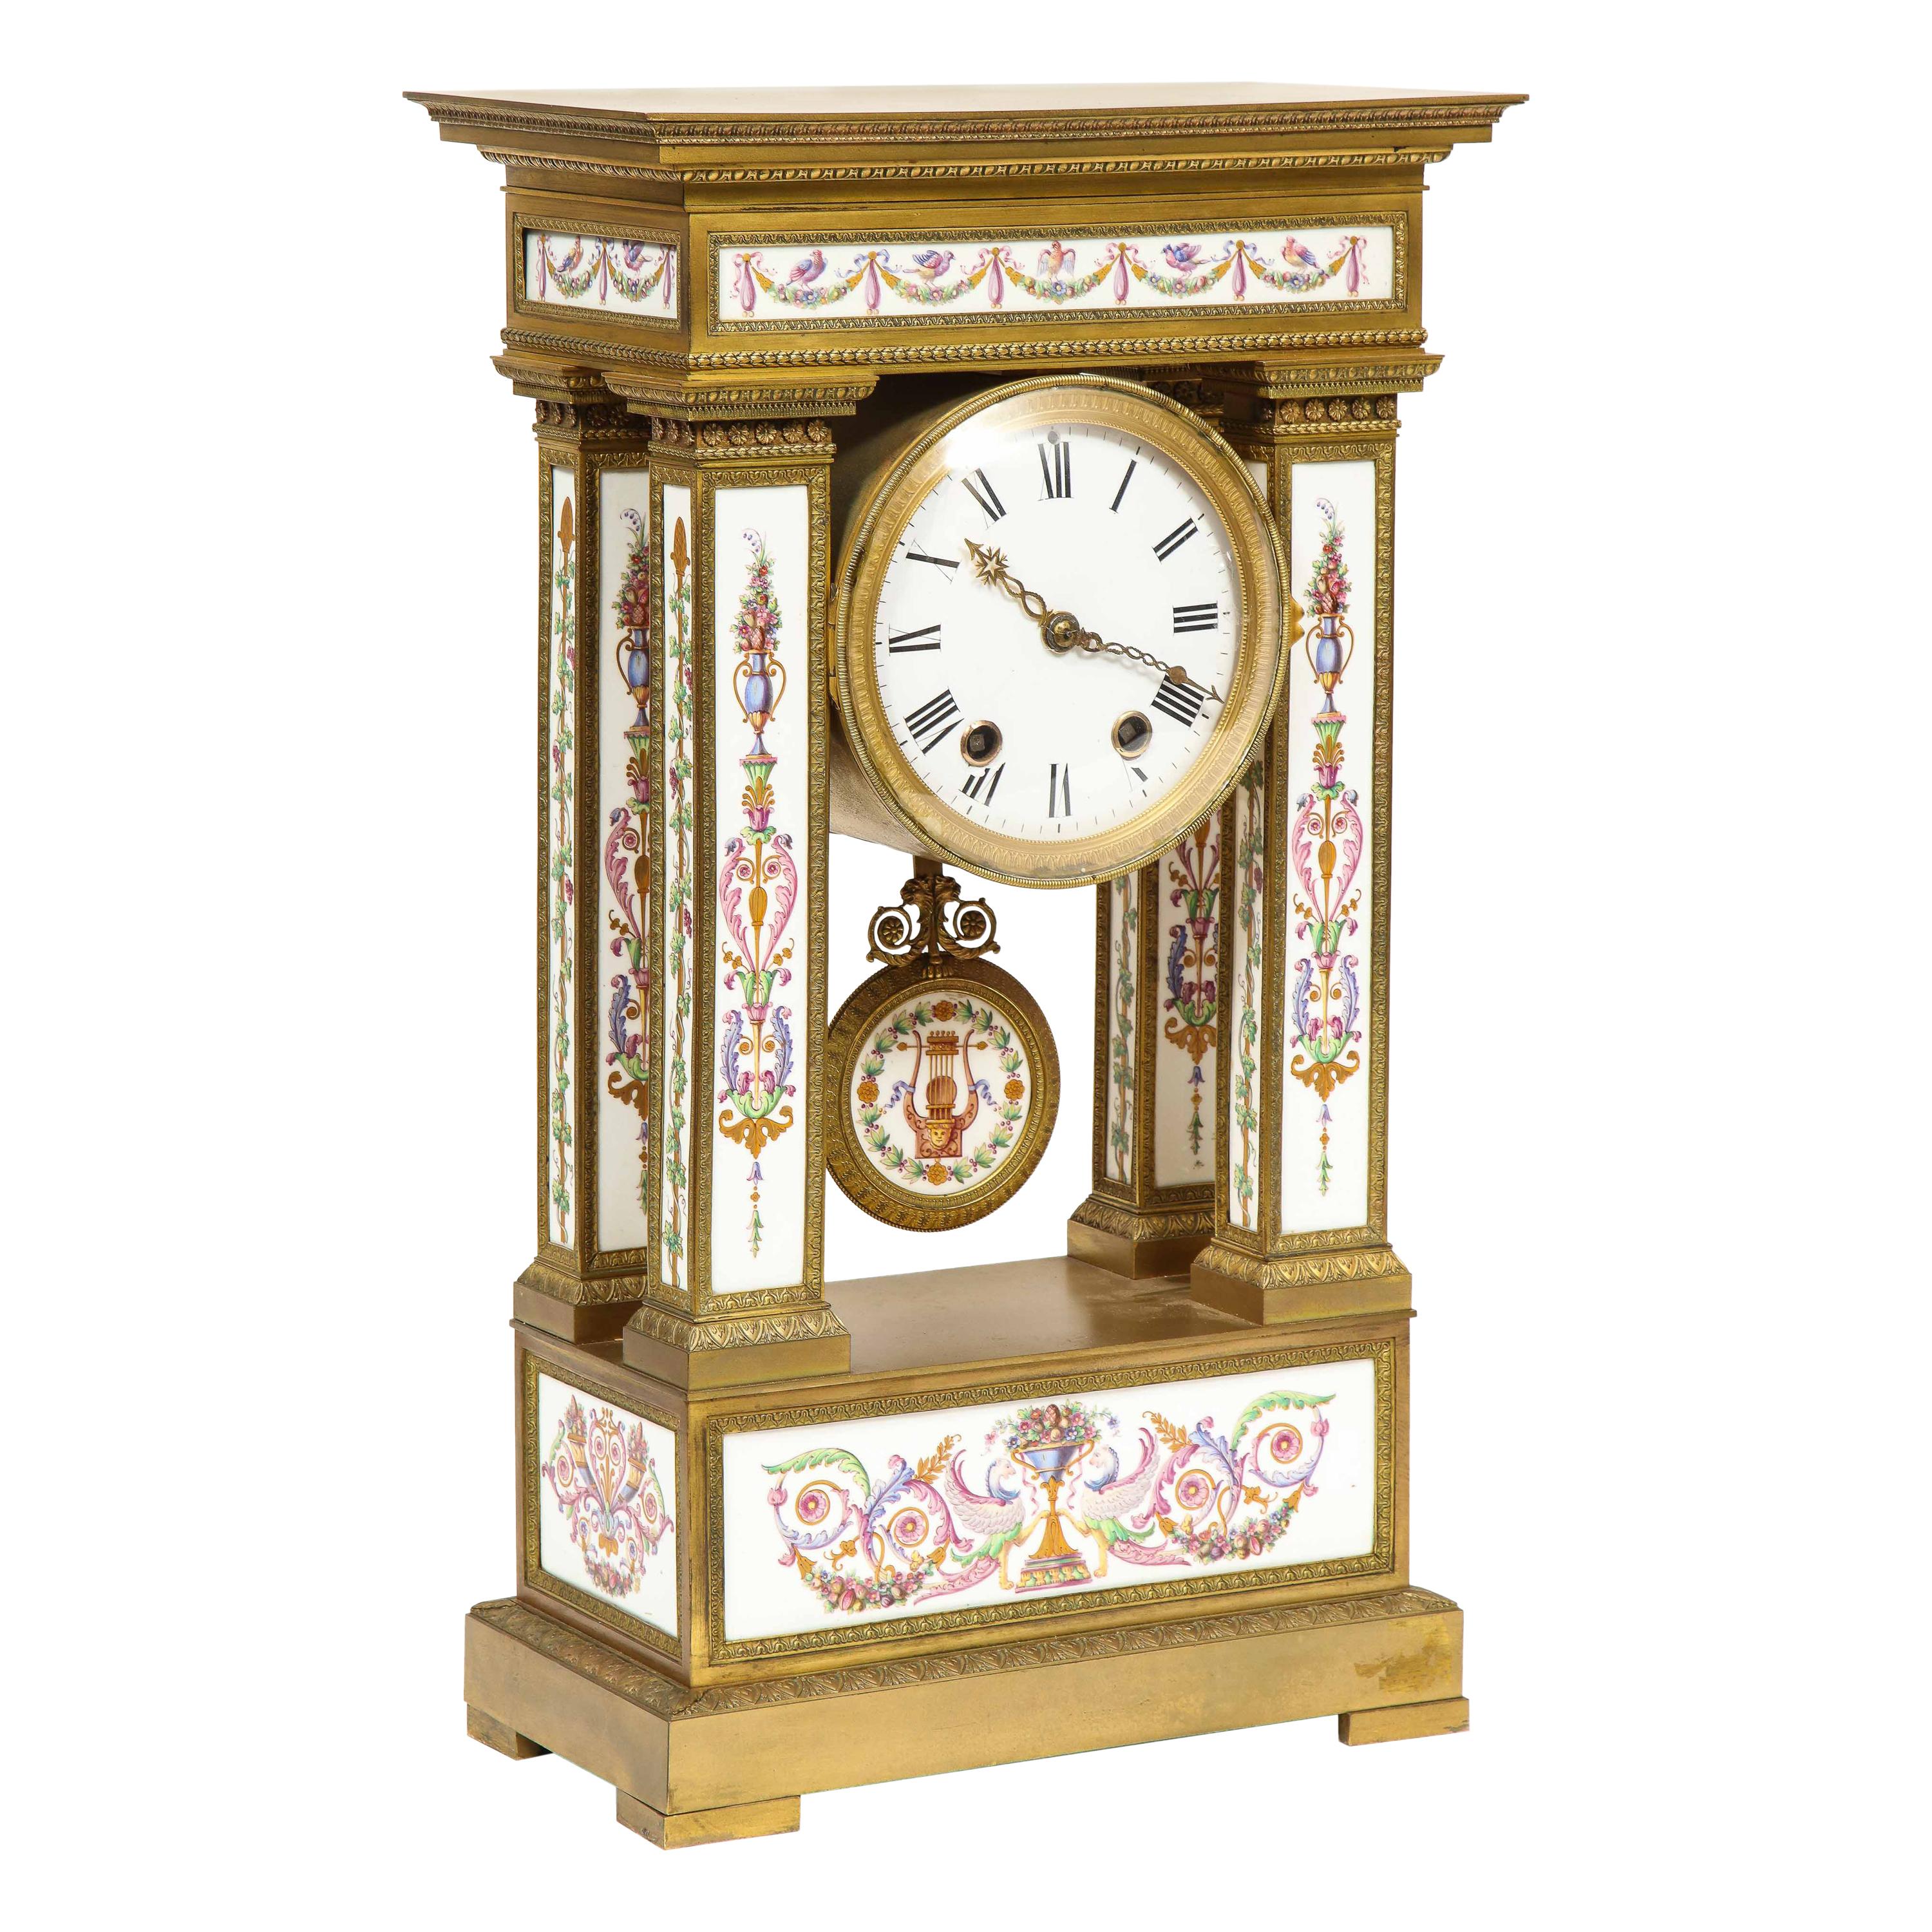 Rare et exquise horloge française en bronze doré et porcelaine, attribuée à Deniere 